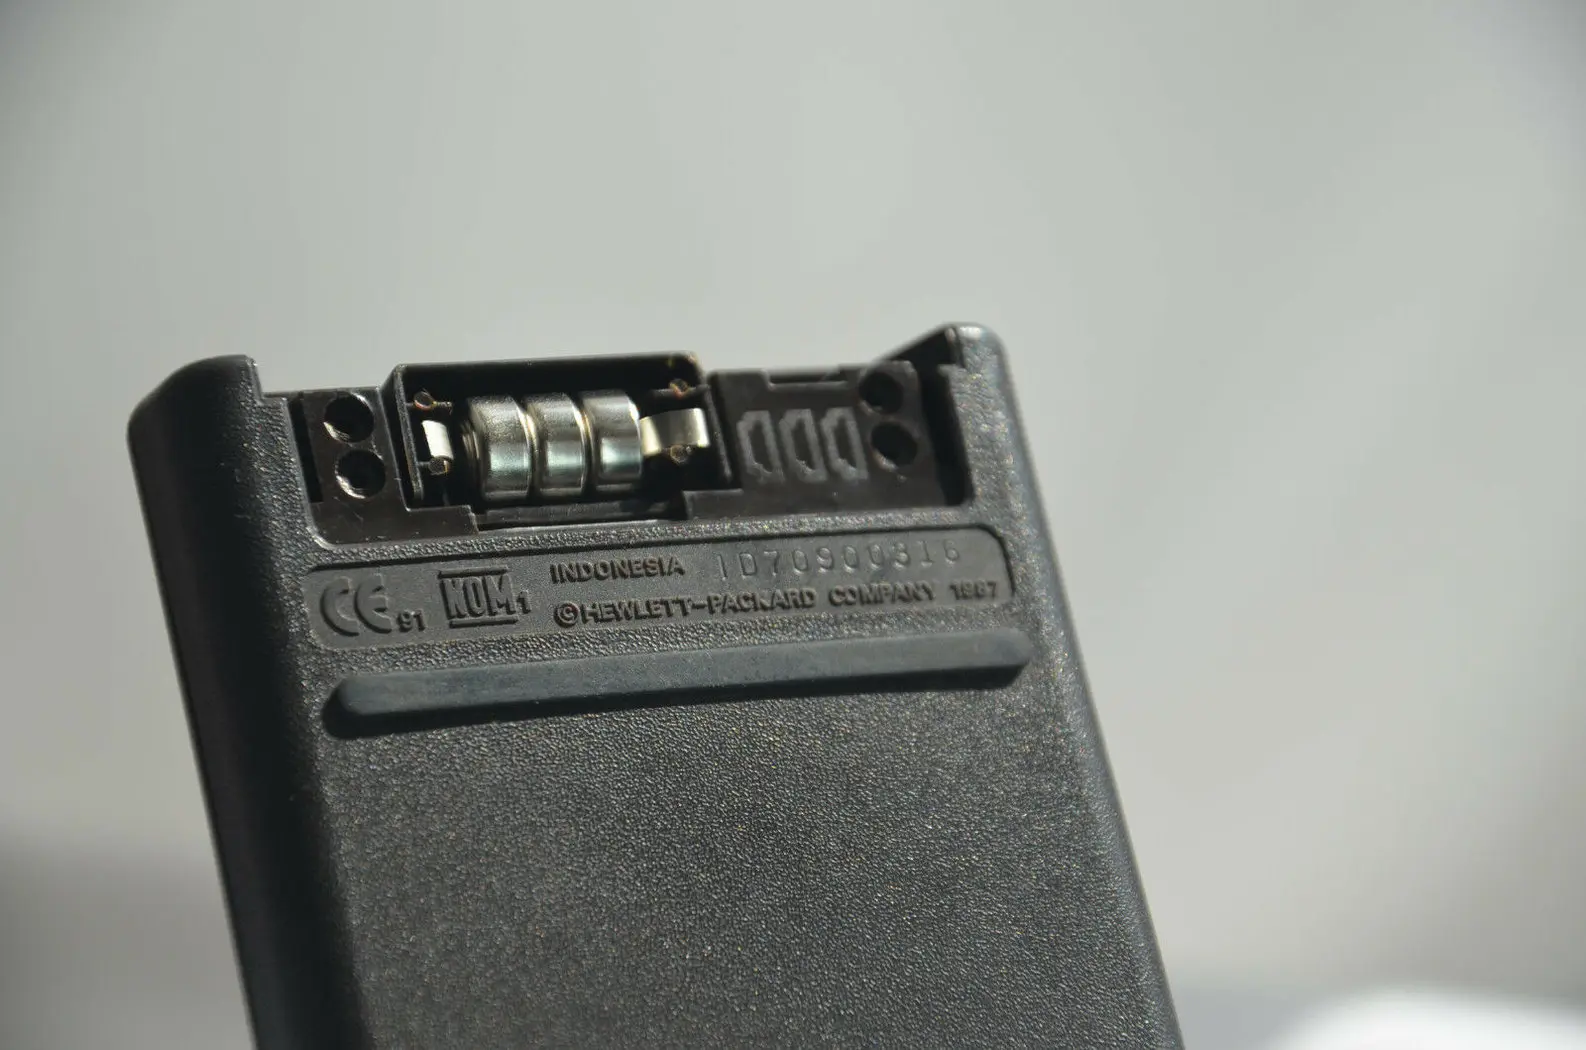 hewlett packard 12c battery - What batteries go in an HP 12c